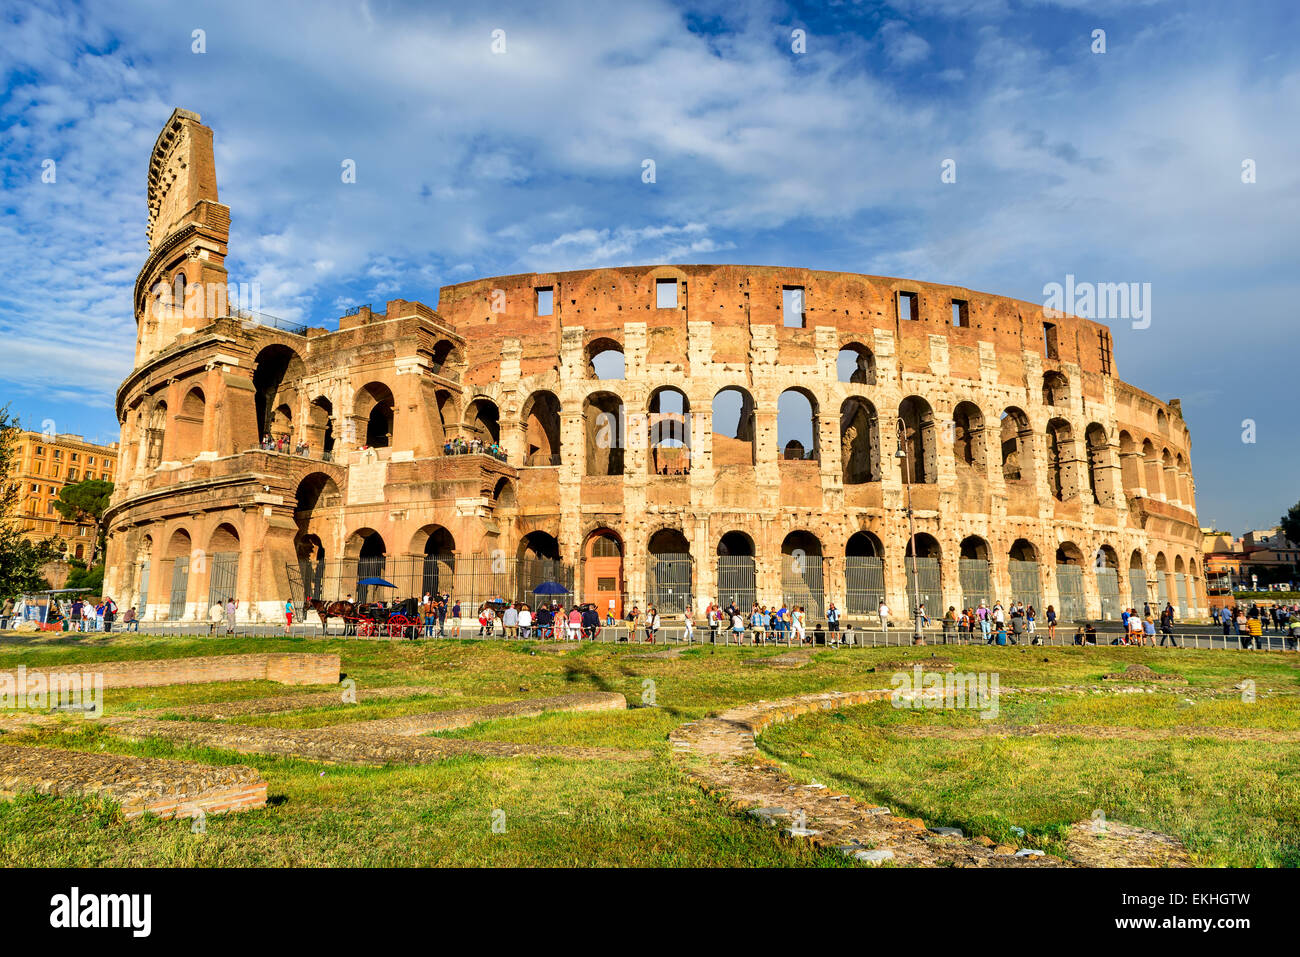 Colosseo vista spettacolare. Colosseo ellittica più grande anfiteatro dell Impero Romano antica civiltà in Italia a Roma. Foto Stock